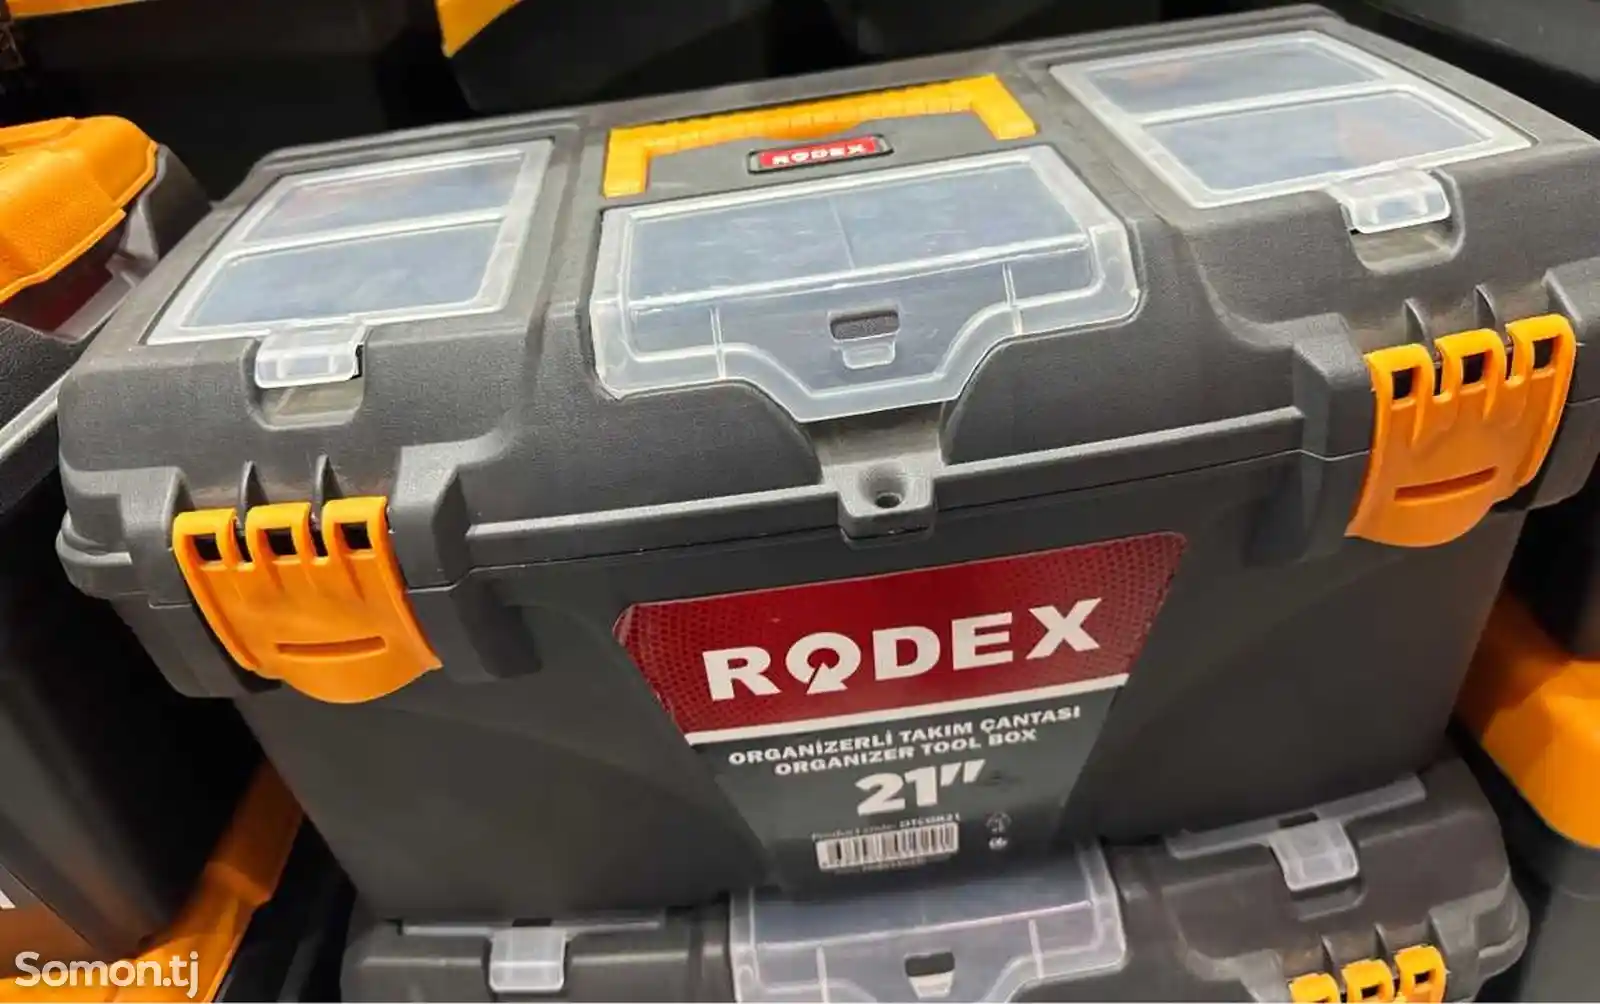 Ящик Rodex 21 для инструментов-2